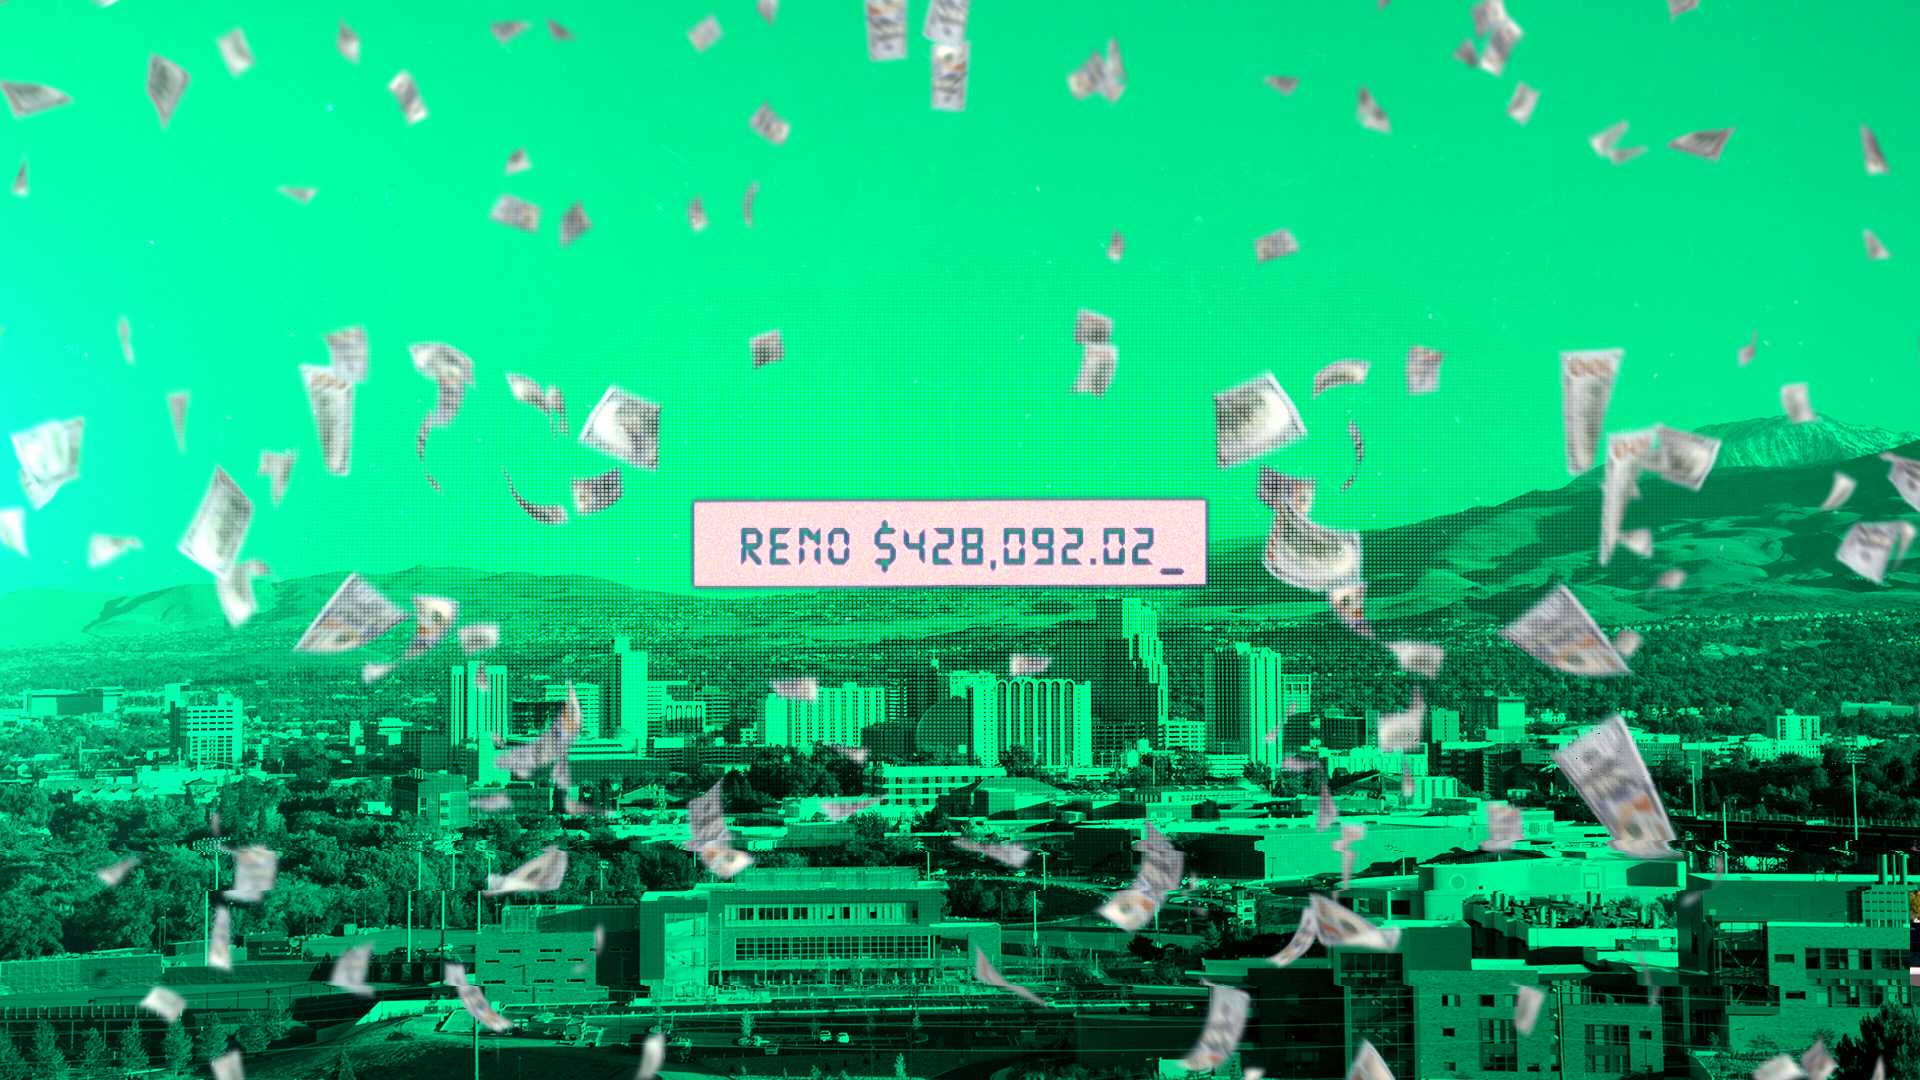 Reno debt